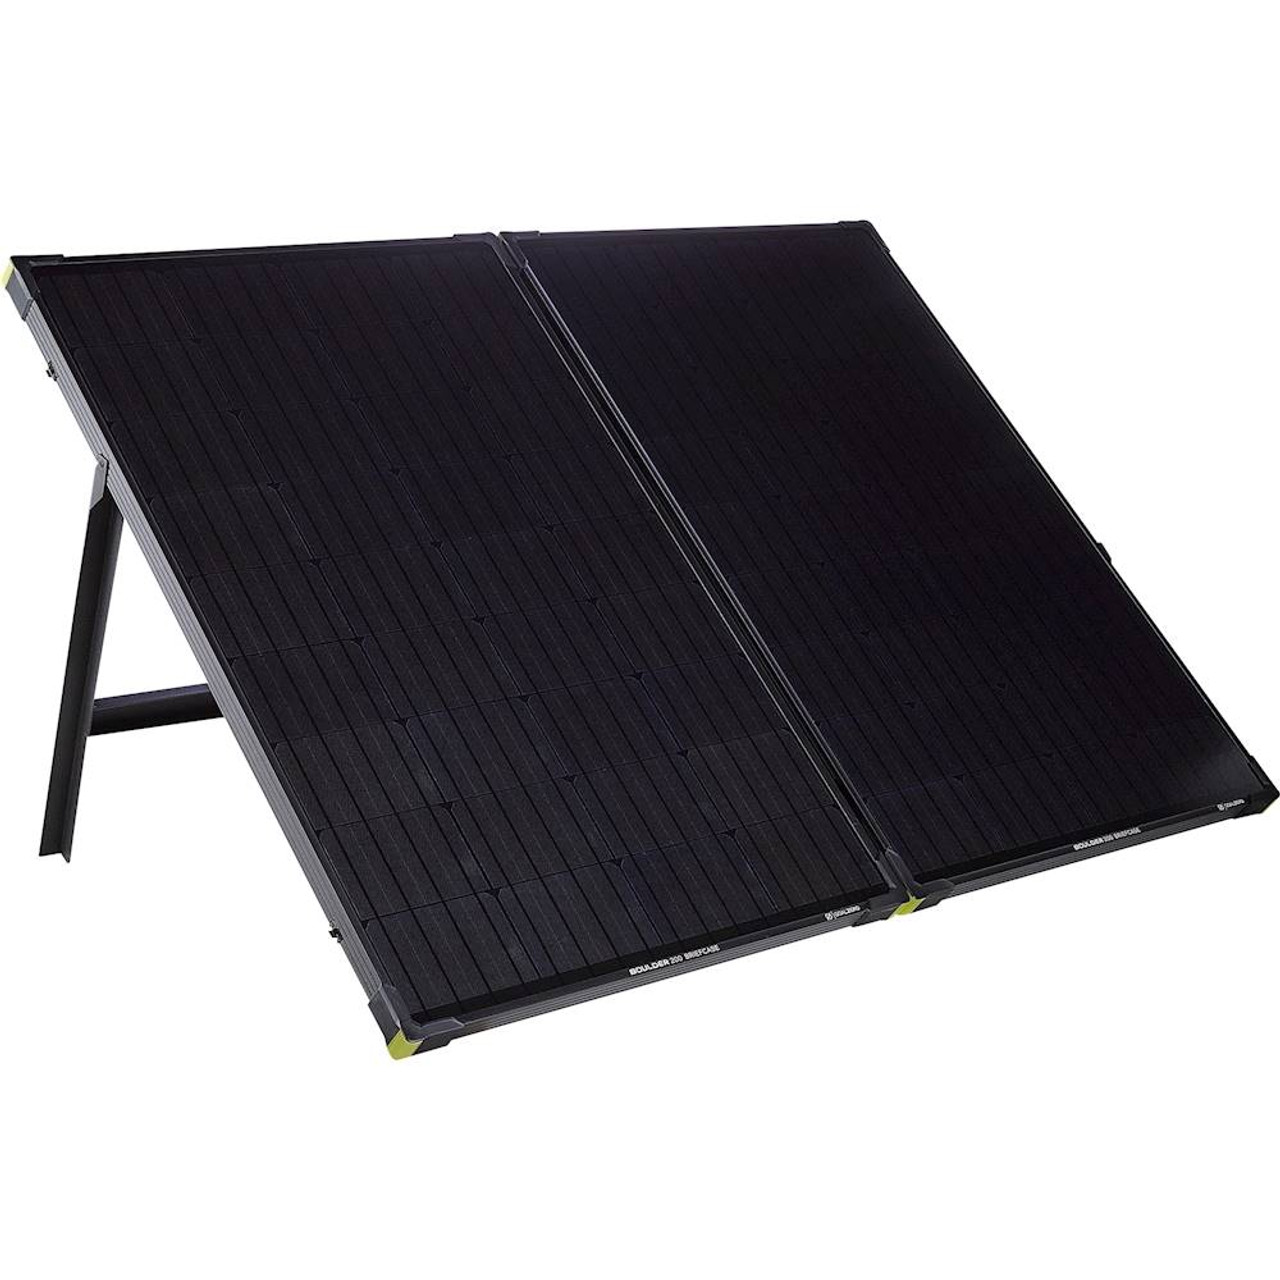 Goal Zero - Boulder 200 Solar Panel Briefcase - Black